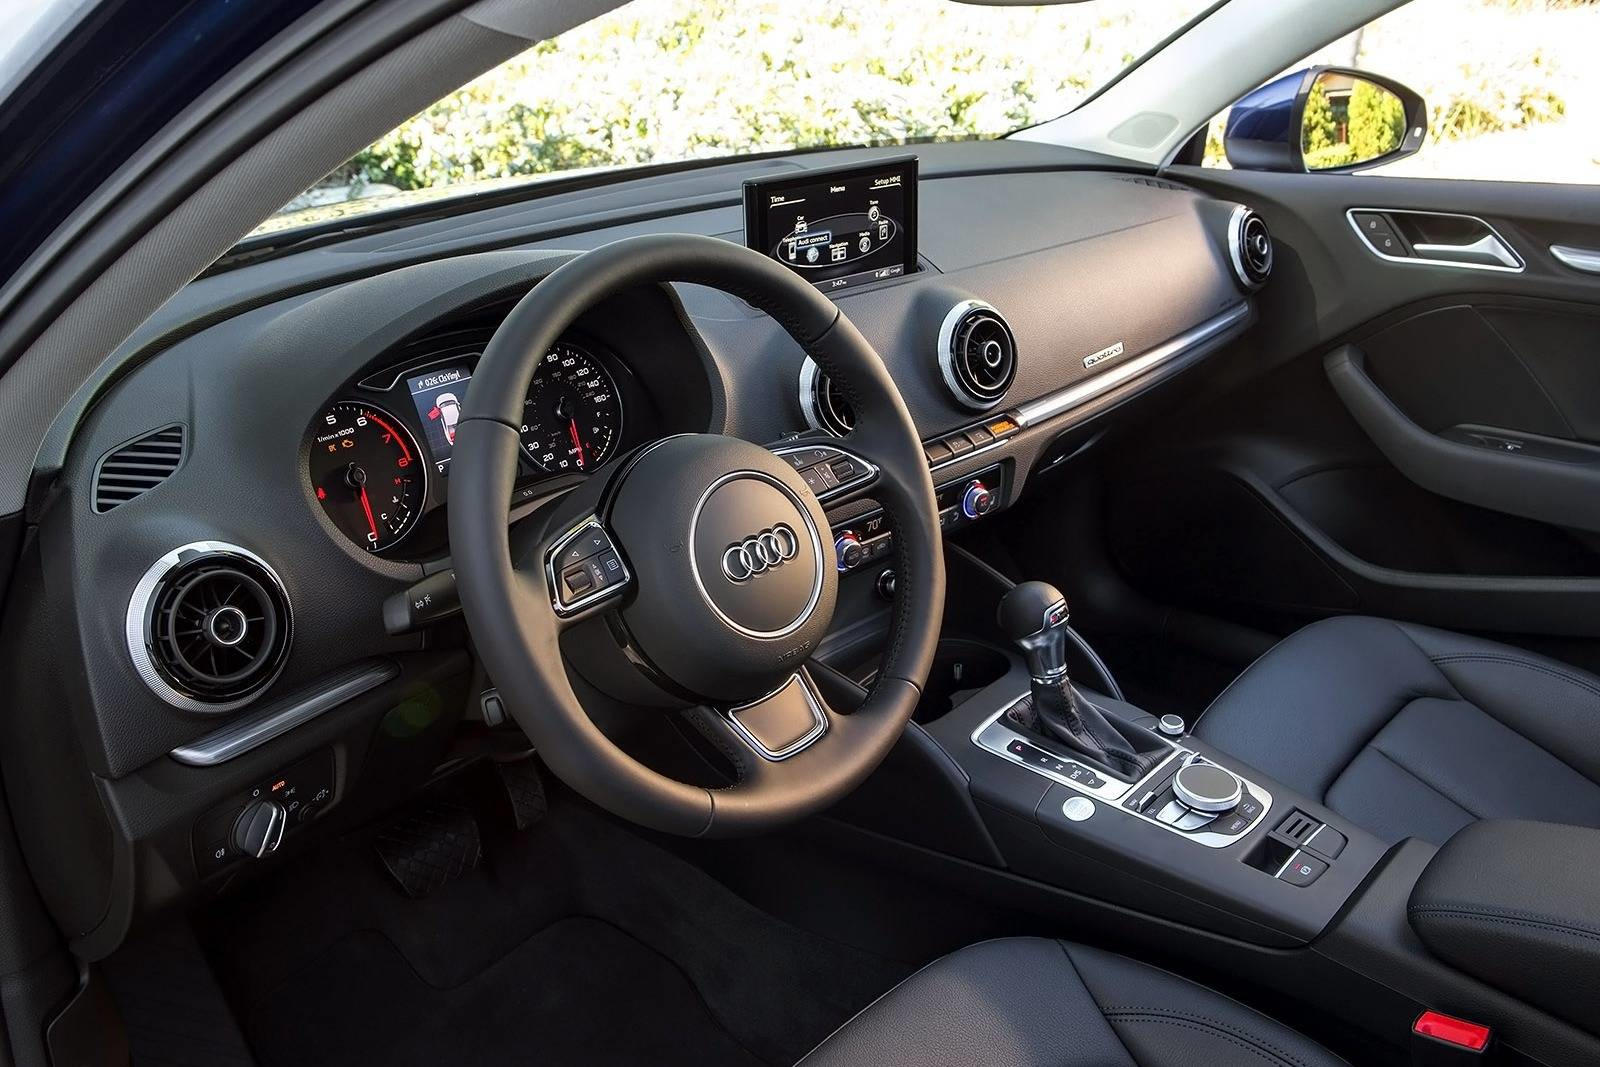 2016 Audi A3 Sedan Interior Photos | CarBuzz